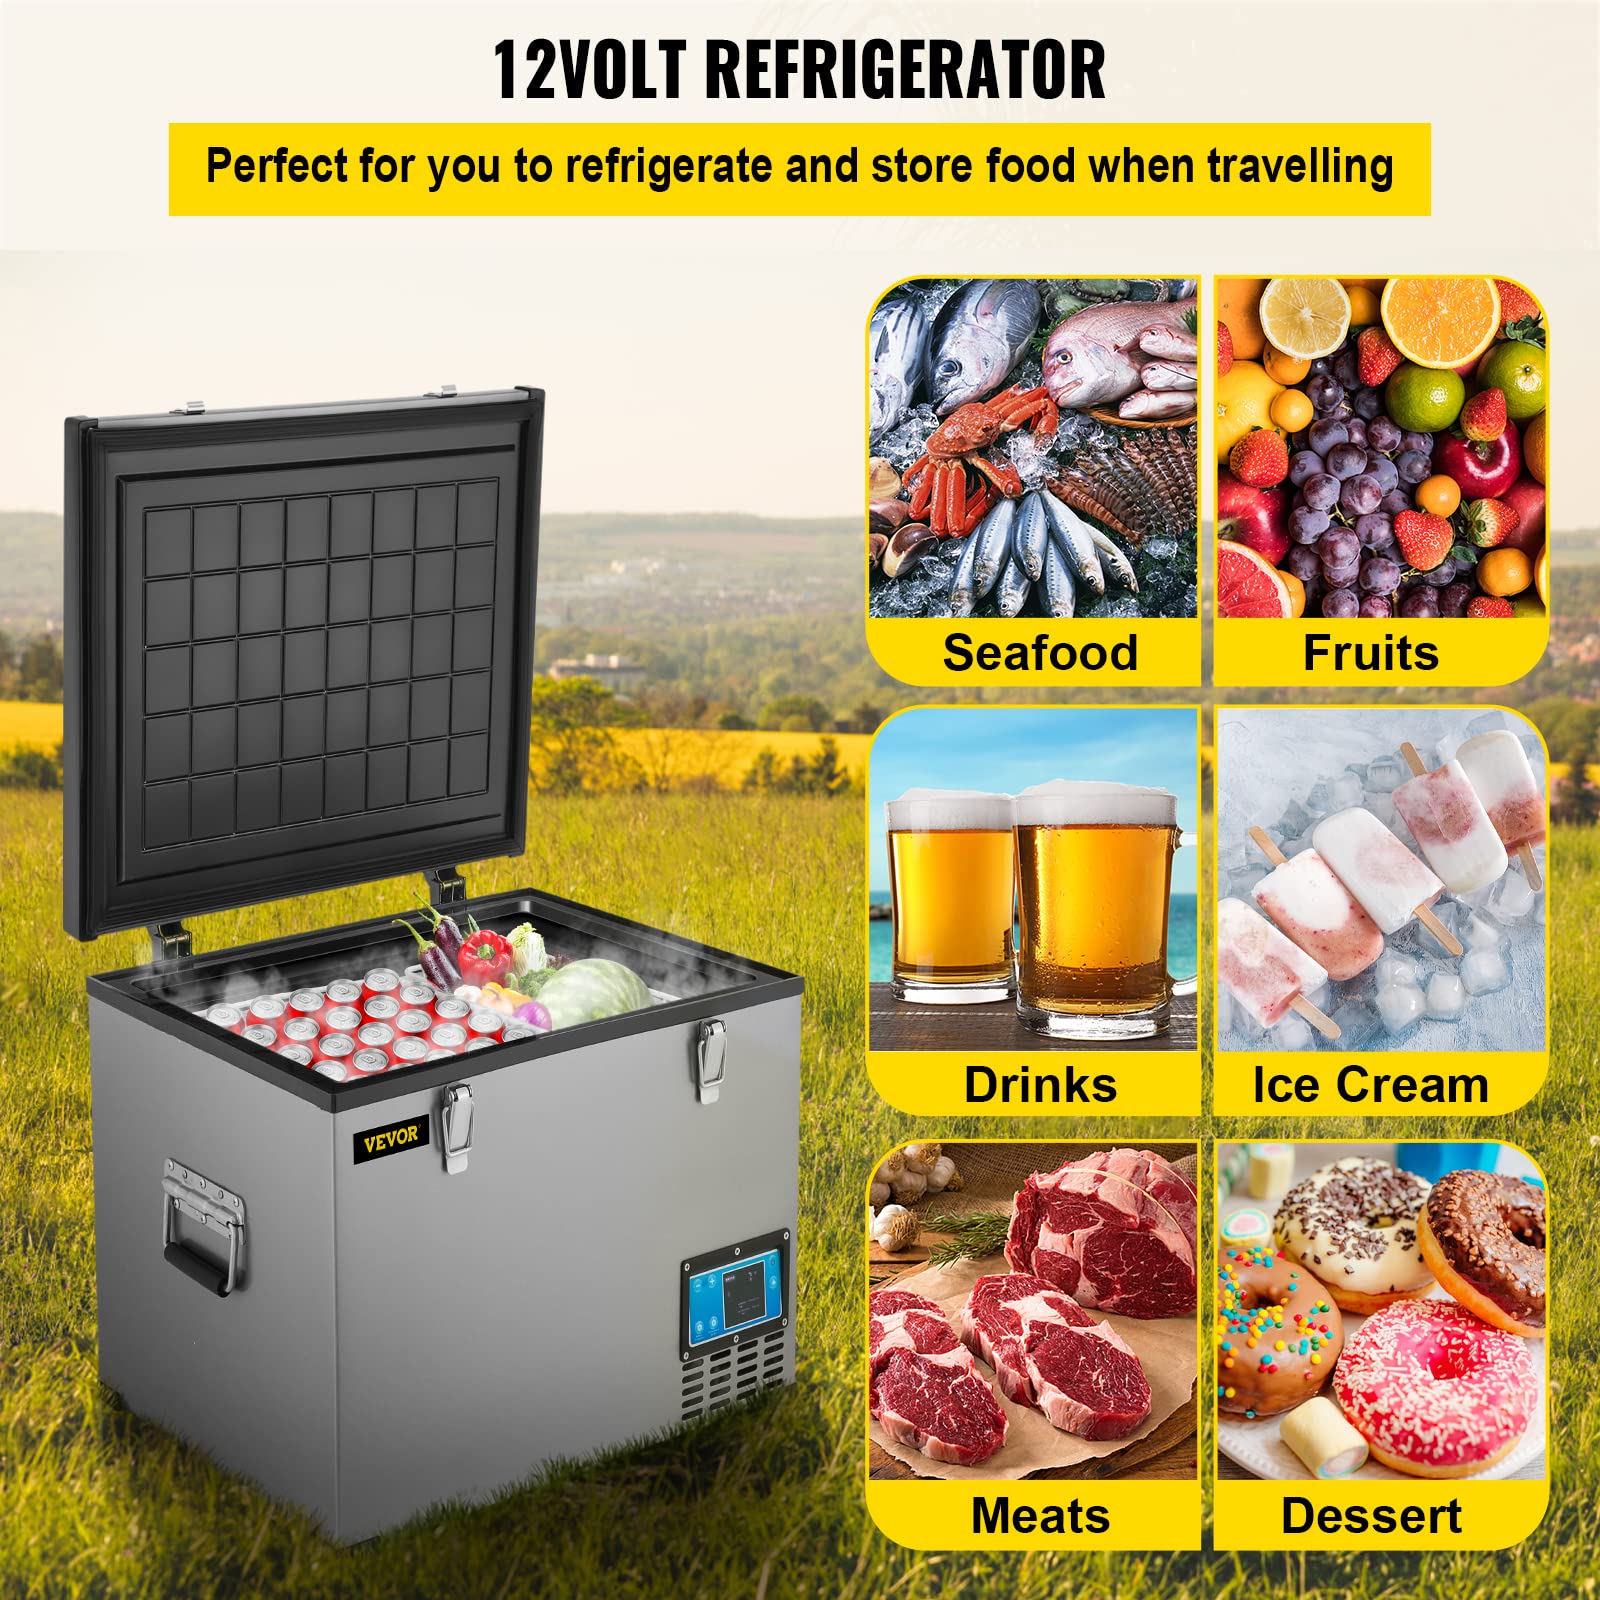 VEVOR Portable Refrigerator 64 Quart, 12 Volt Refrigerator with Compressor and App Control, Metal Shell Chest Refrigerator, -4℉ to 68℉, DC 12/24V, AC 110-240V(Home & Car Use)